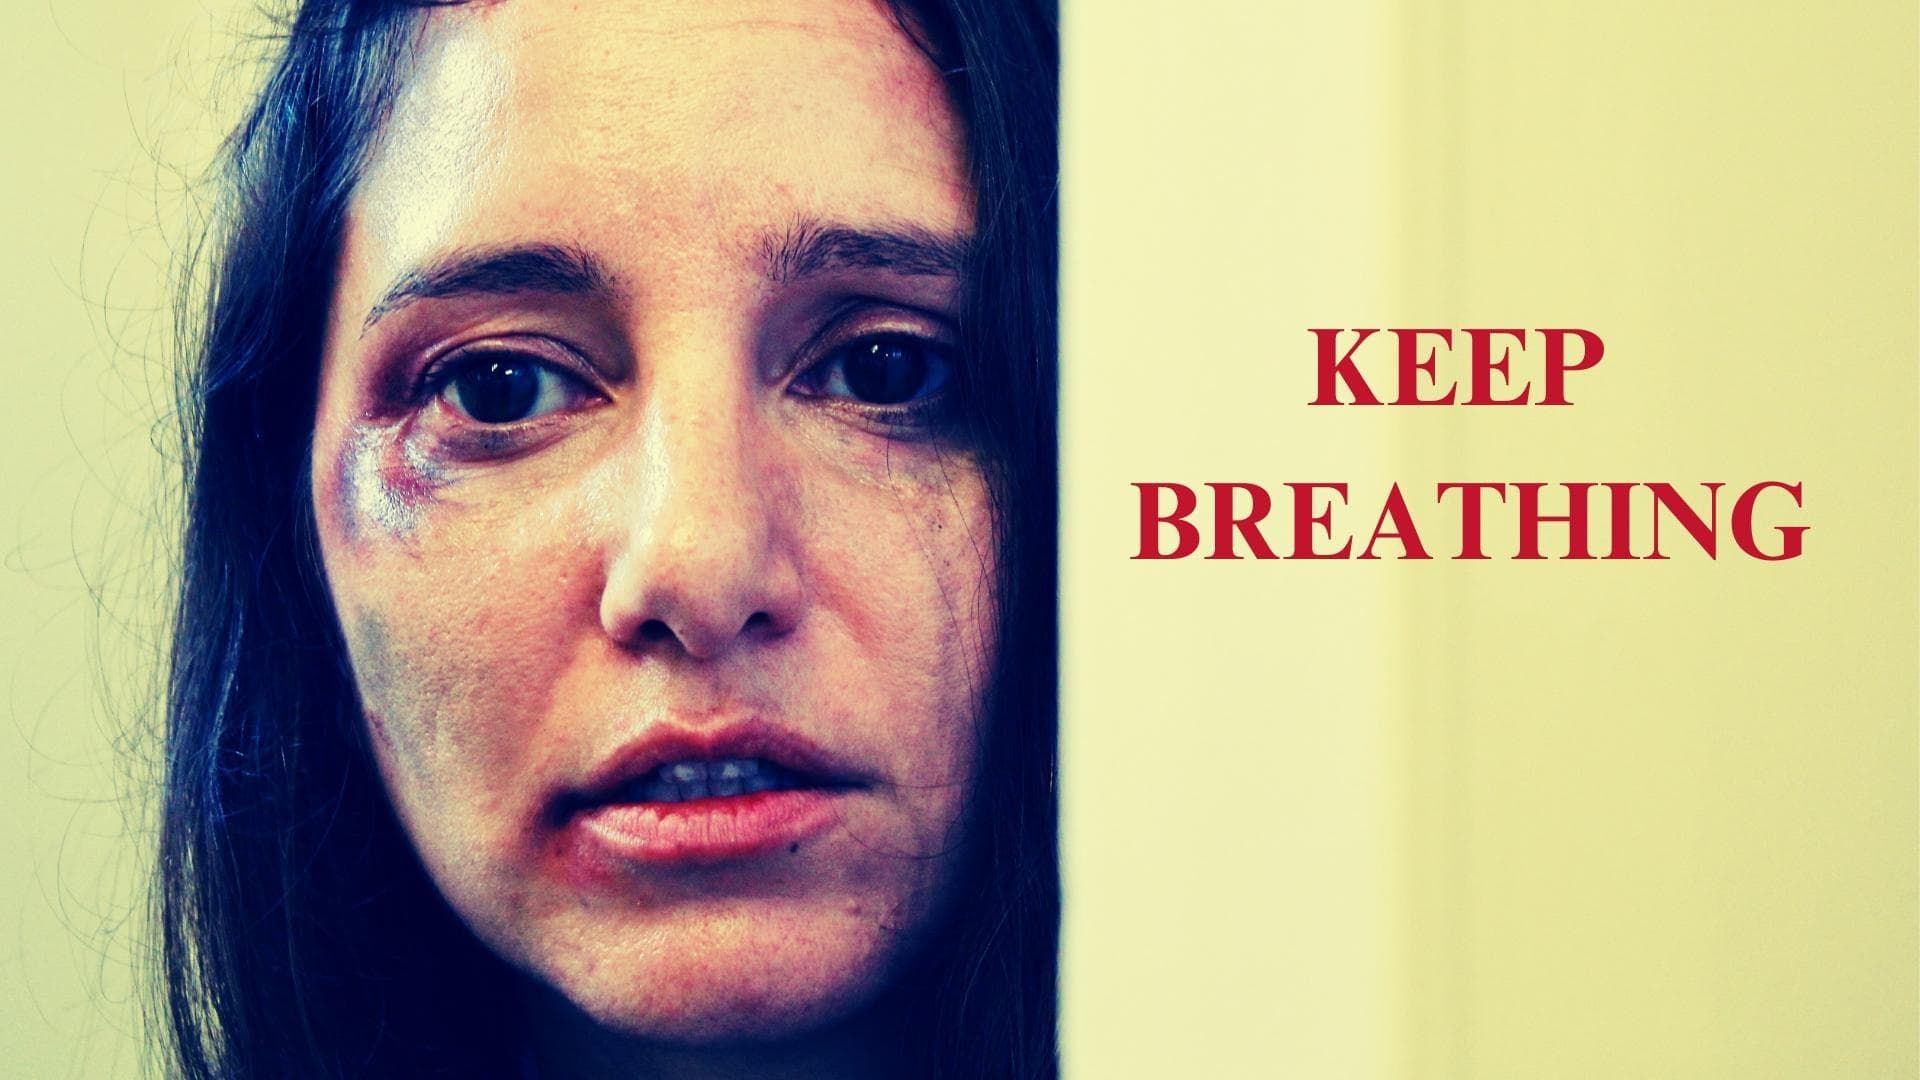 Keep Breathing background